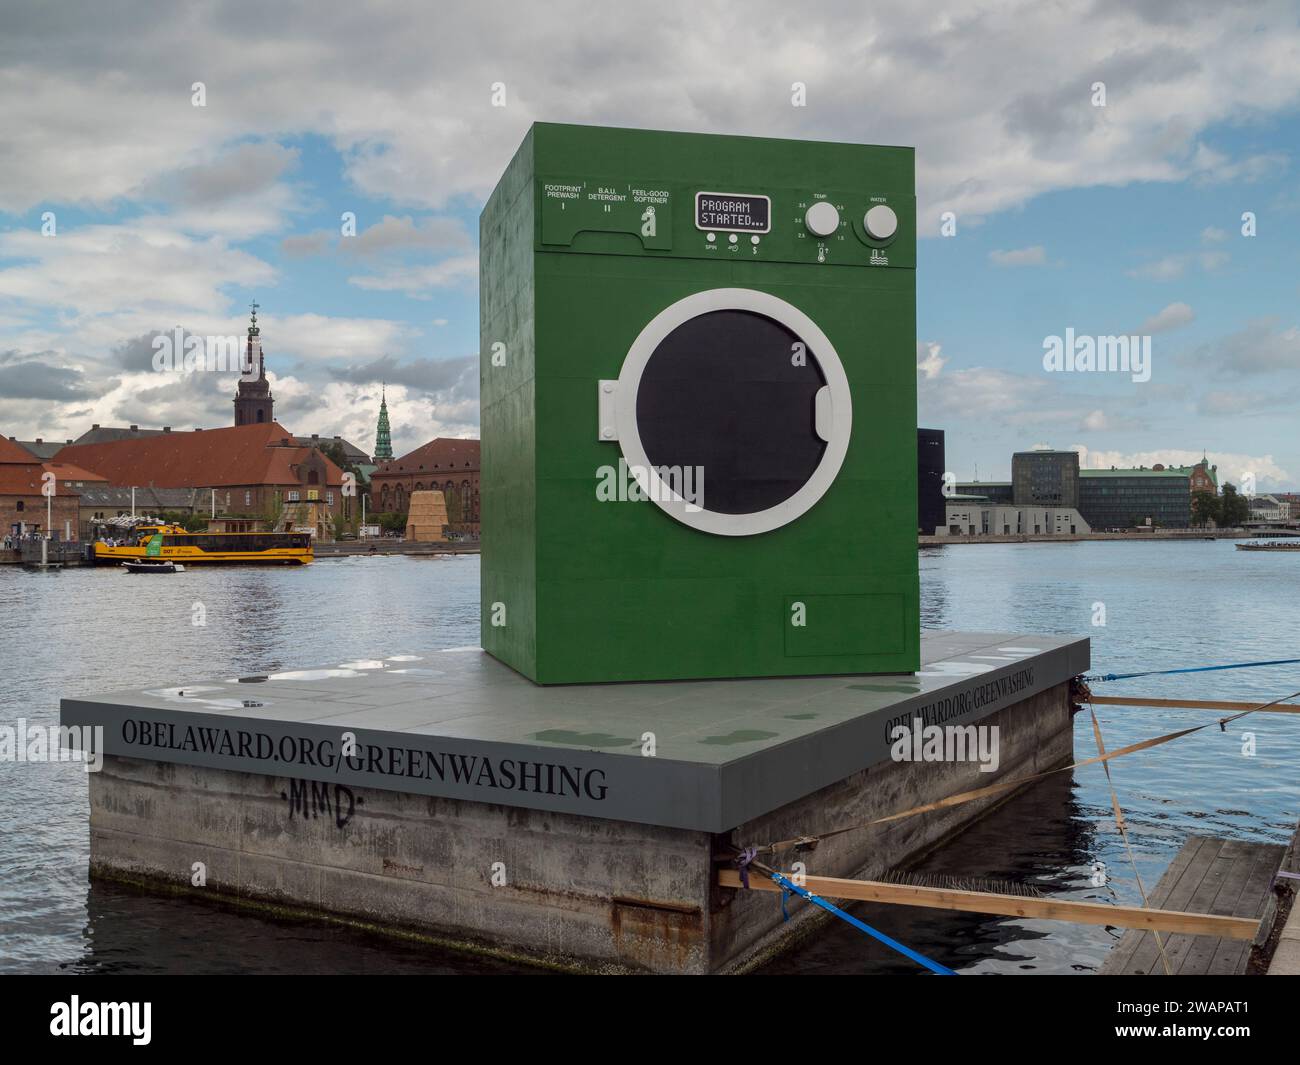 Eine riesige grüne Waschmaschine beim Maststudio, die die Praxis des Grünwaschens karikiert, schwimmt auf einem Lastkahn in Kopenhagen, Dänemark. Stockfoto